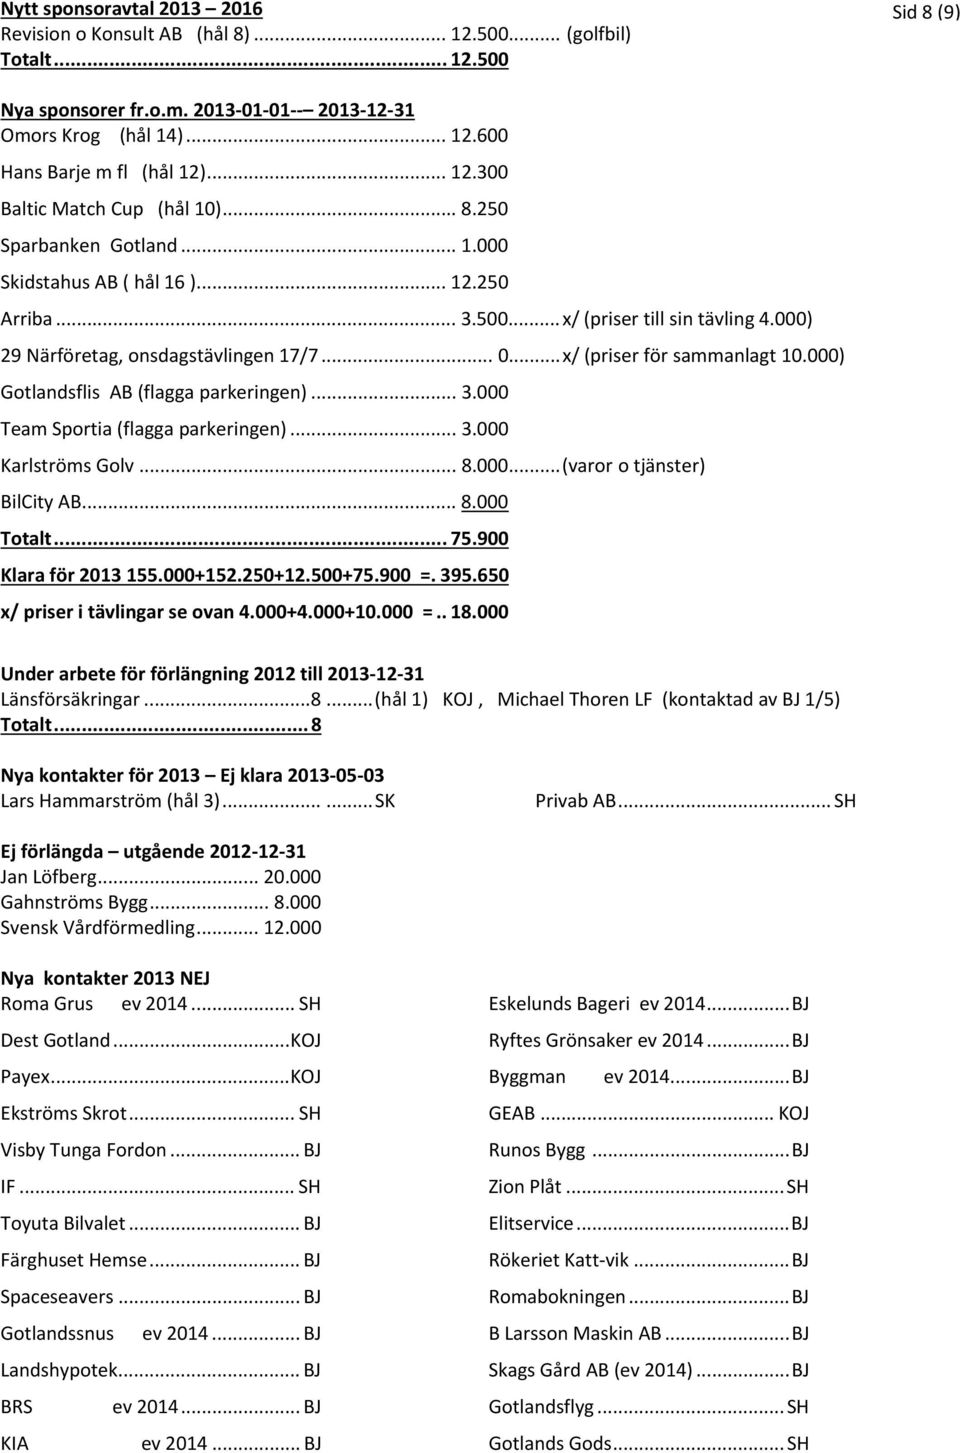 .. 0... x/ (priser för sammanlagt 10.000) Gotlandsflis AB (flagga parkeringen)... 3.000 Team Sportia (flagga parkeringen)... 3.000 Karlströms Golv... 8.000... (varor o tjänster) BilCity AB... 8.000 Totalt.